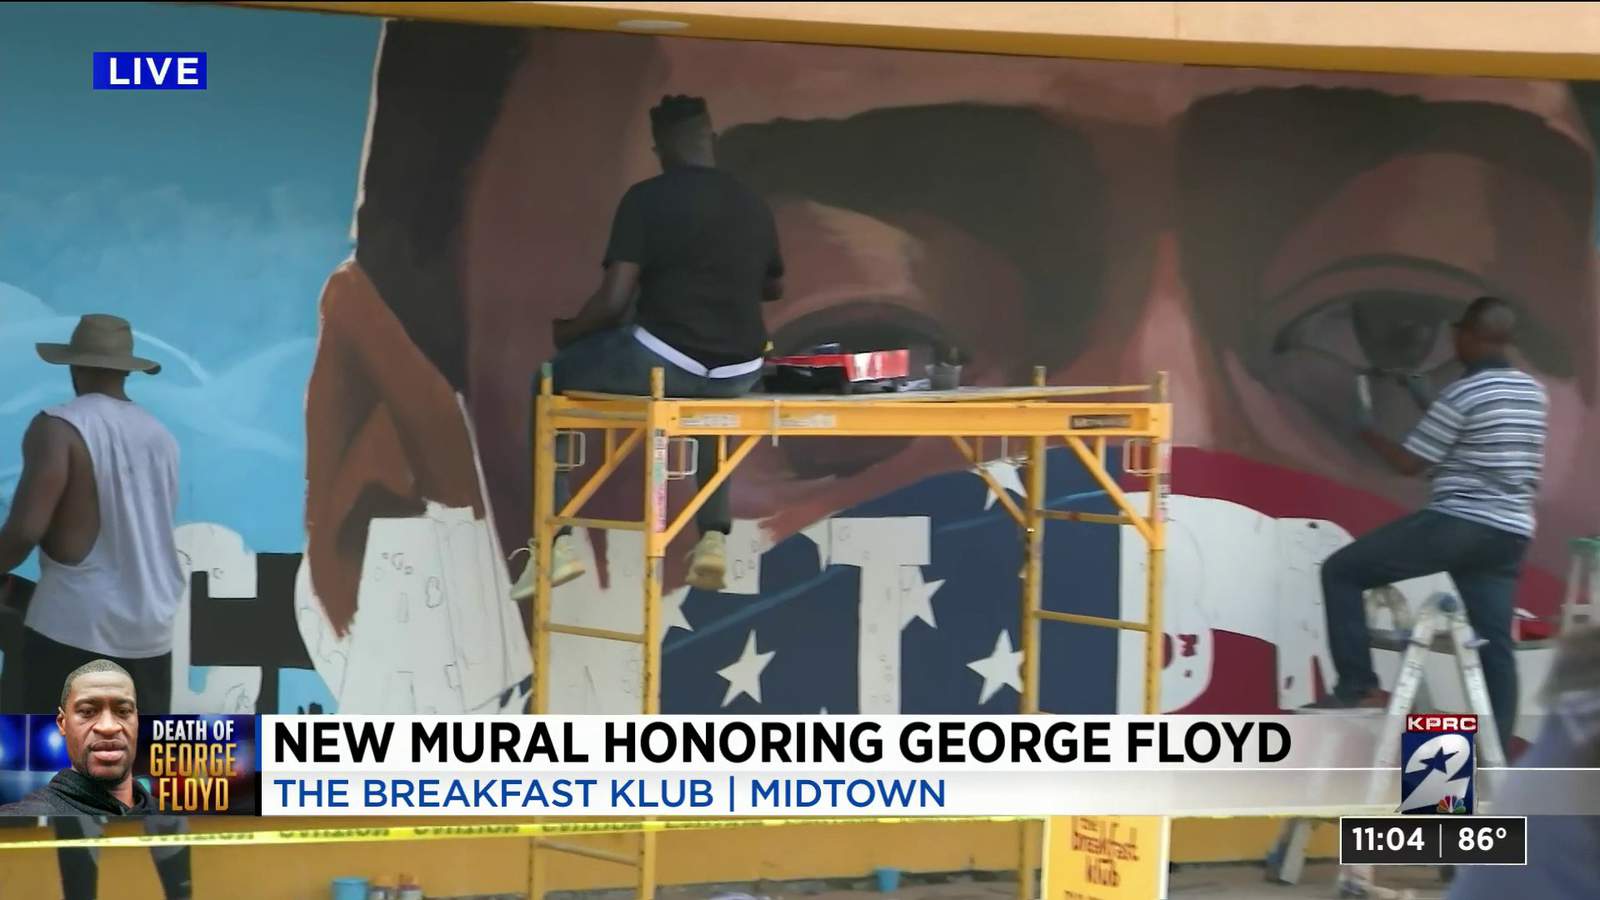 Artist paints mural of George Floyd on The Breakfast Klub